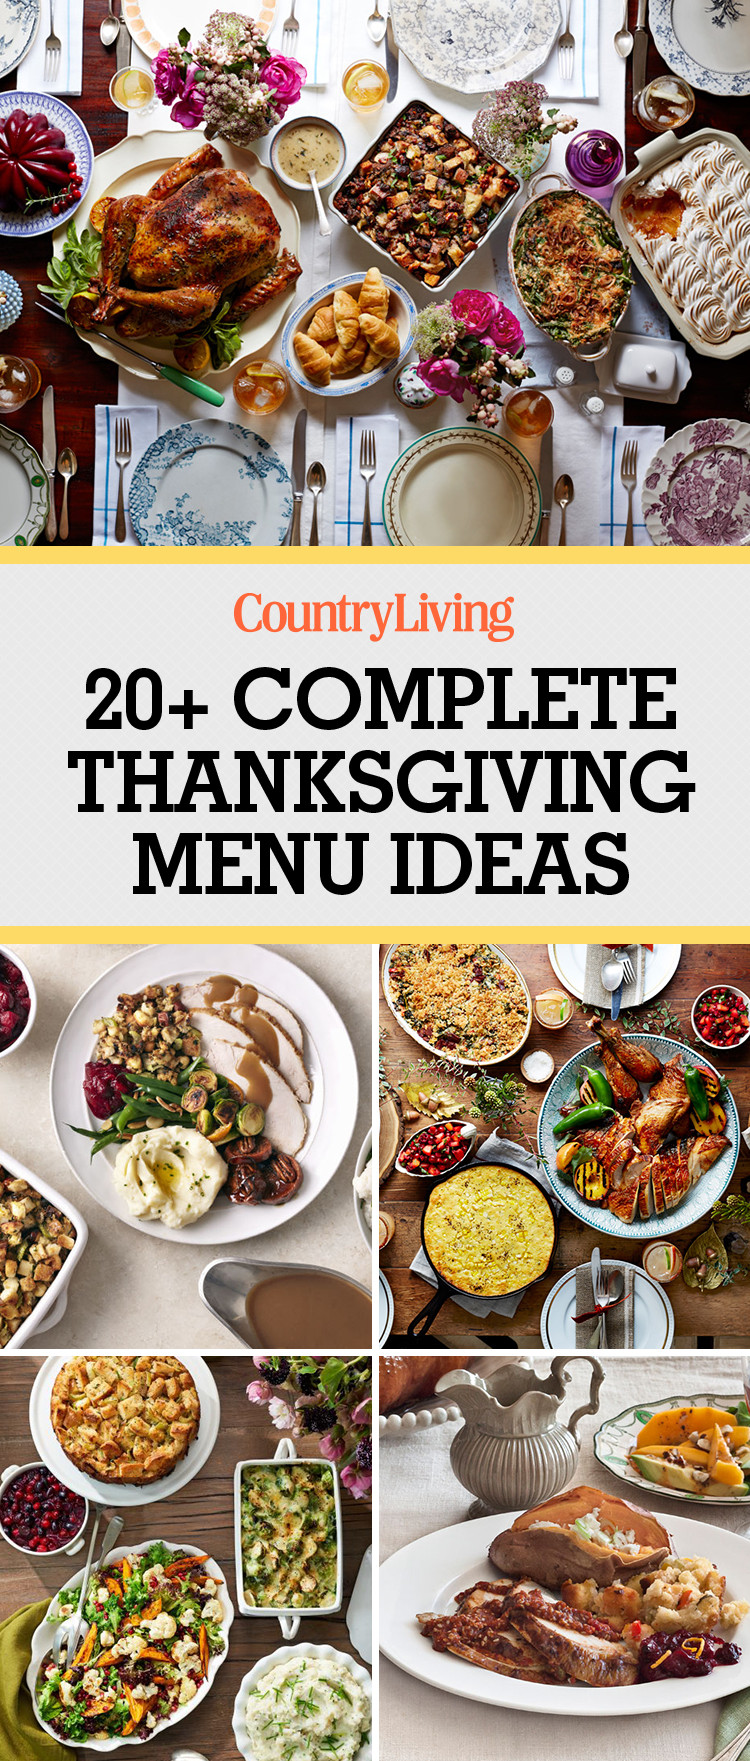 Turkey Dinner Ideas
 26 Thanksgiving Menu Ideas Thanksgiving Dinner Menu Recipes